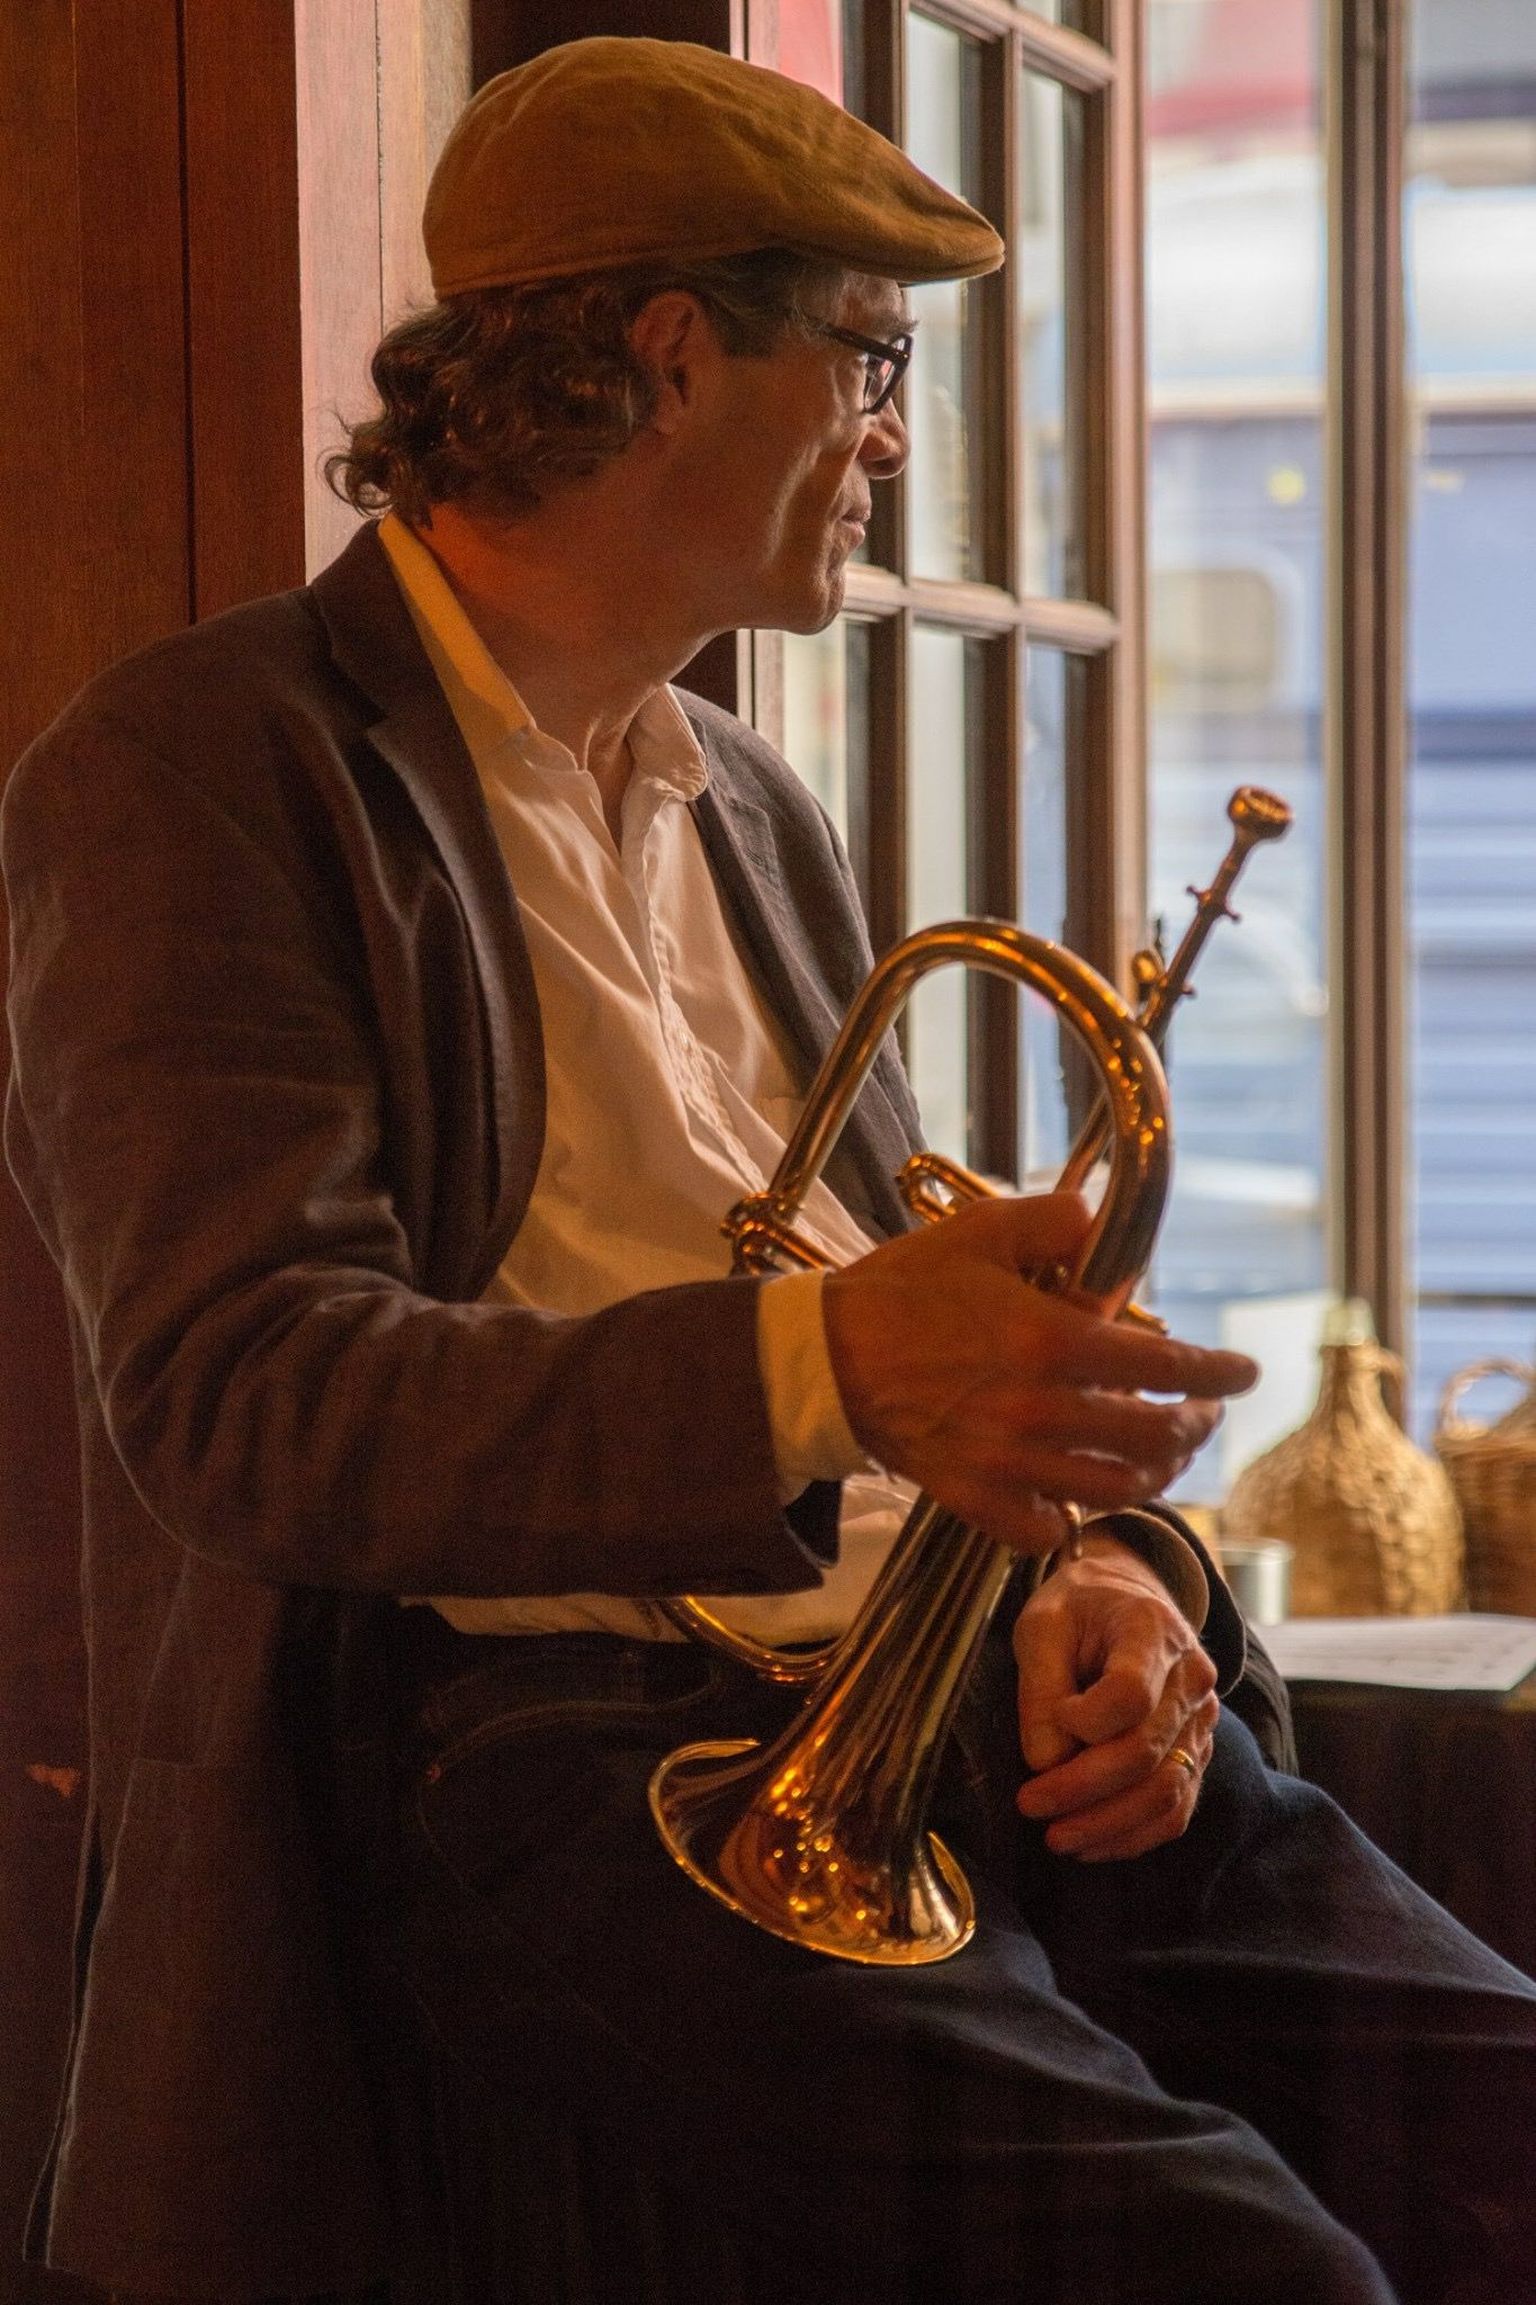 New Yorgist pärit trompetist John Marshall on töötanud koos paljude maailma jazzi suurkujudega.